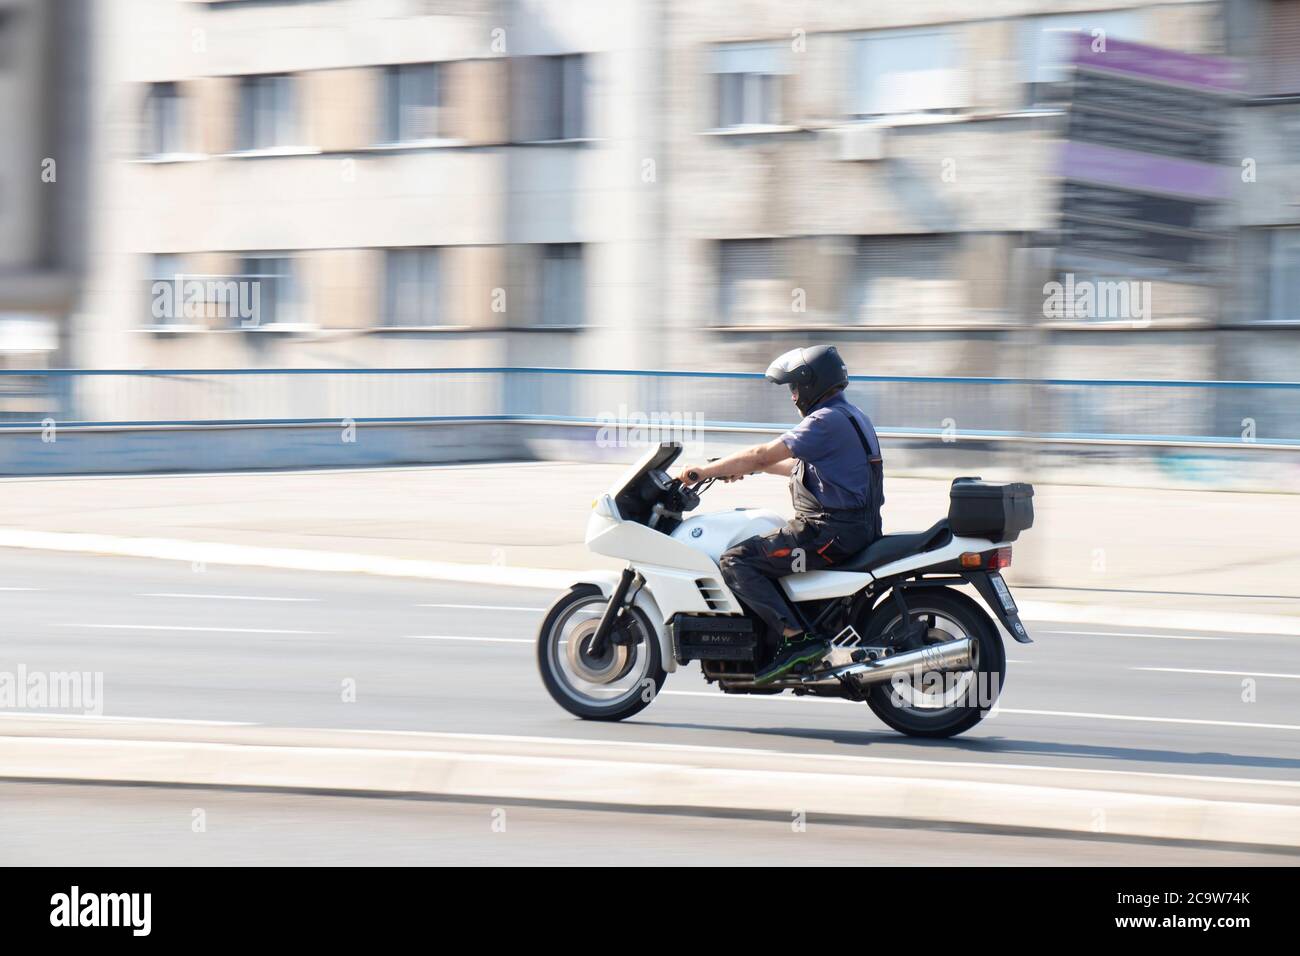 Belgrade, Serbie - 31 juillet 2020: Mécanicien en travail en général à bord d'une moto rapide dans une rue vide de la ville par quartier résidentiel Banque D'Images